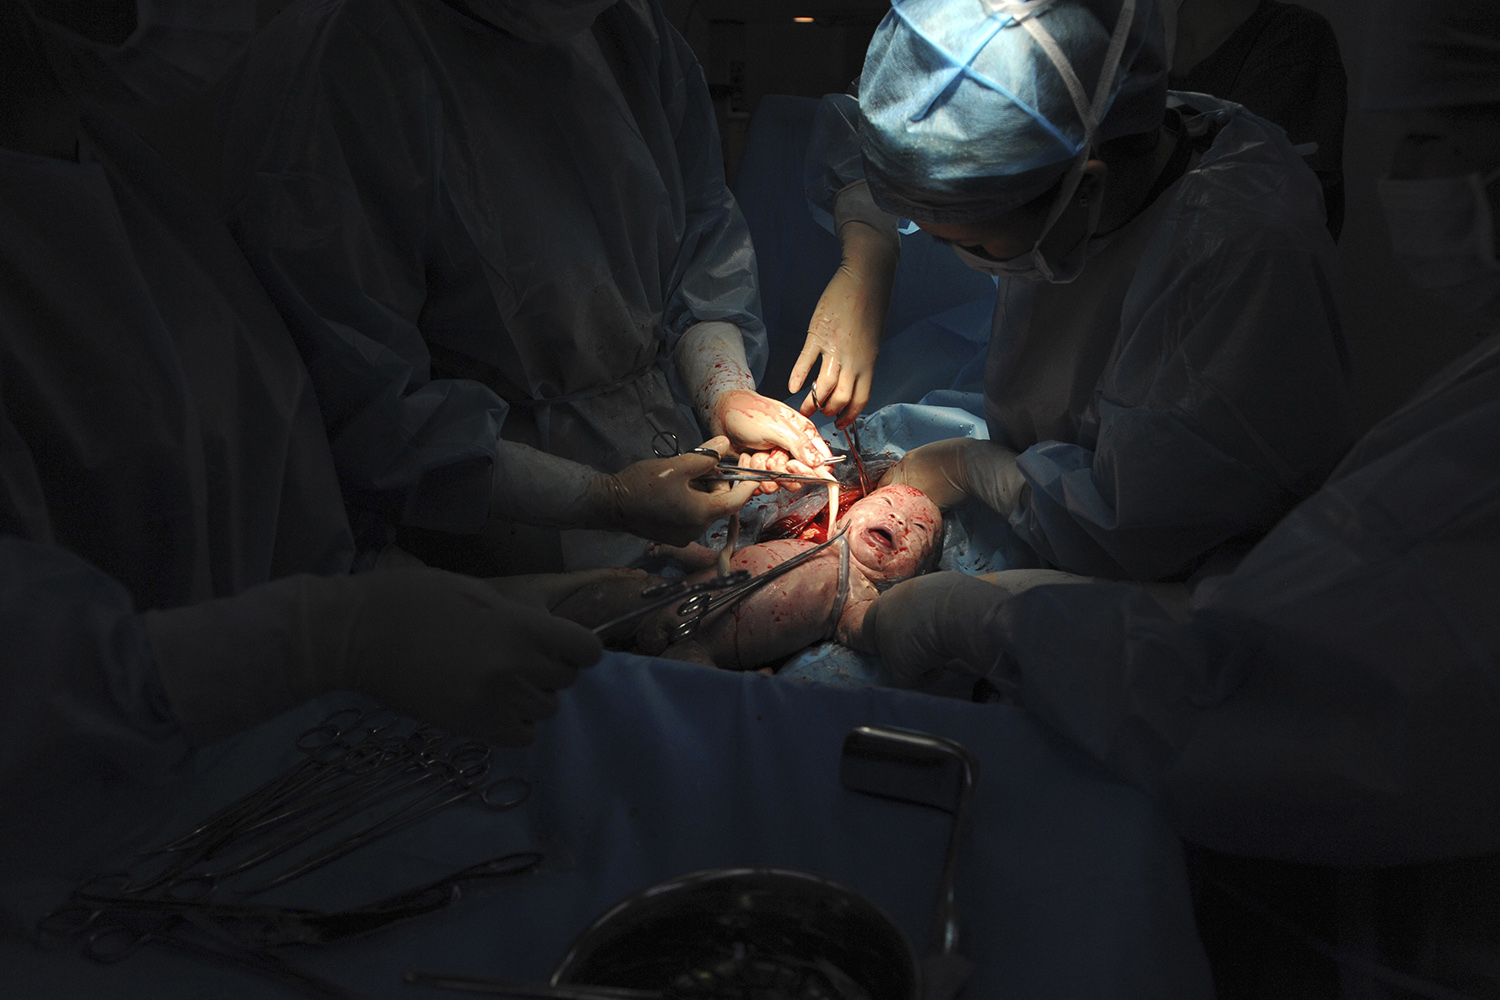 Un médico deja olvidado el móvil en el vientre de una paciente